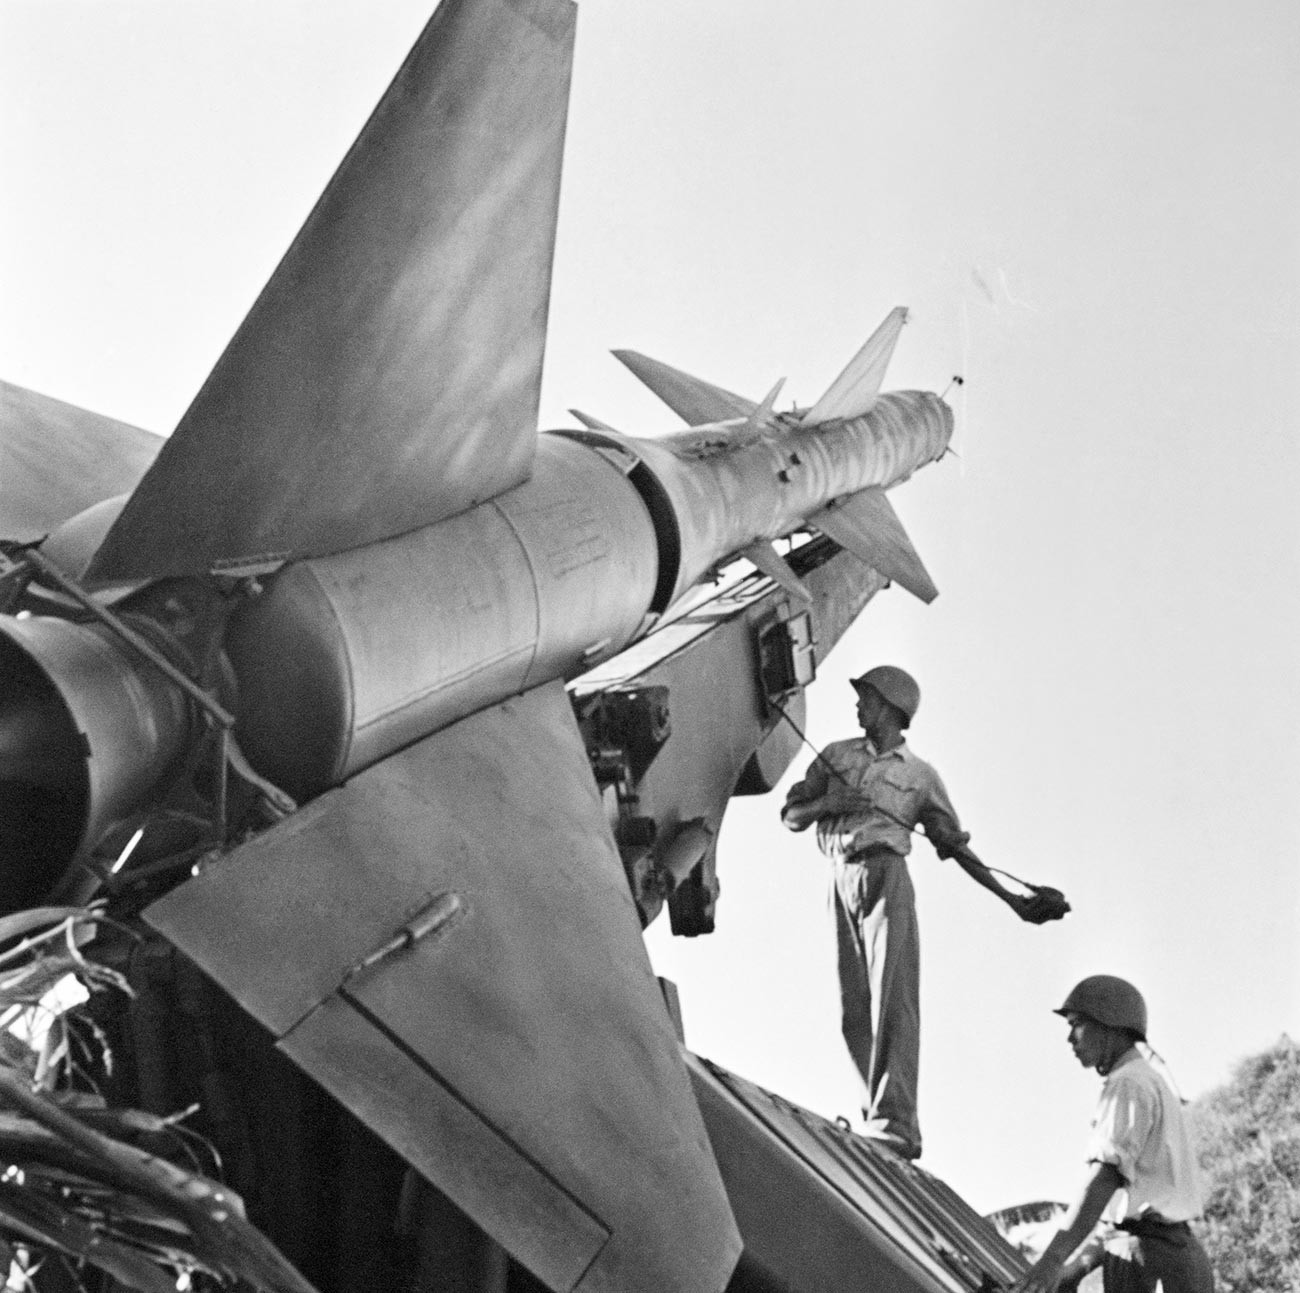 Бойцы Вьетнамской Народной Армии рядом с одной из боевых ракет для защиты от налетов авиации США во время войны во Вьетнаме.